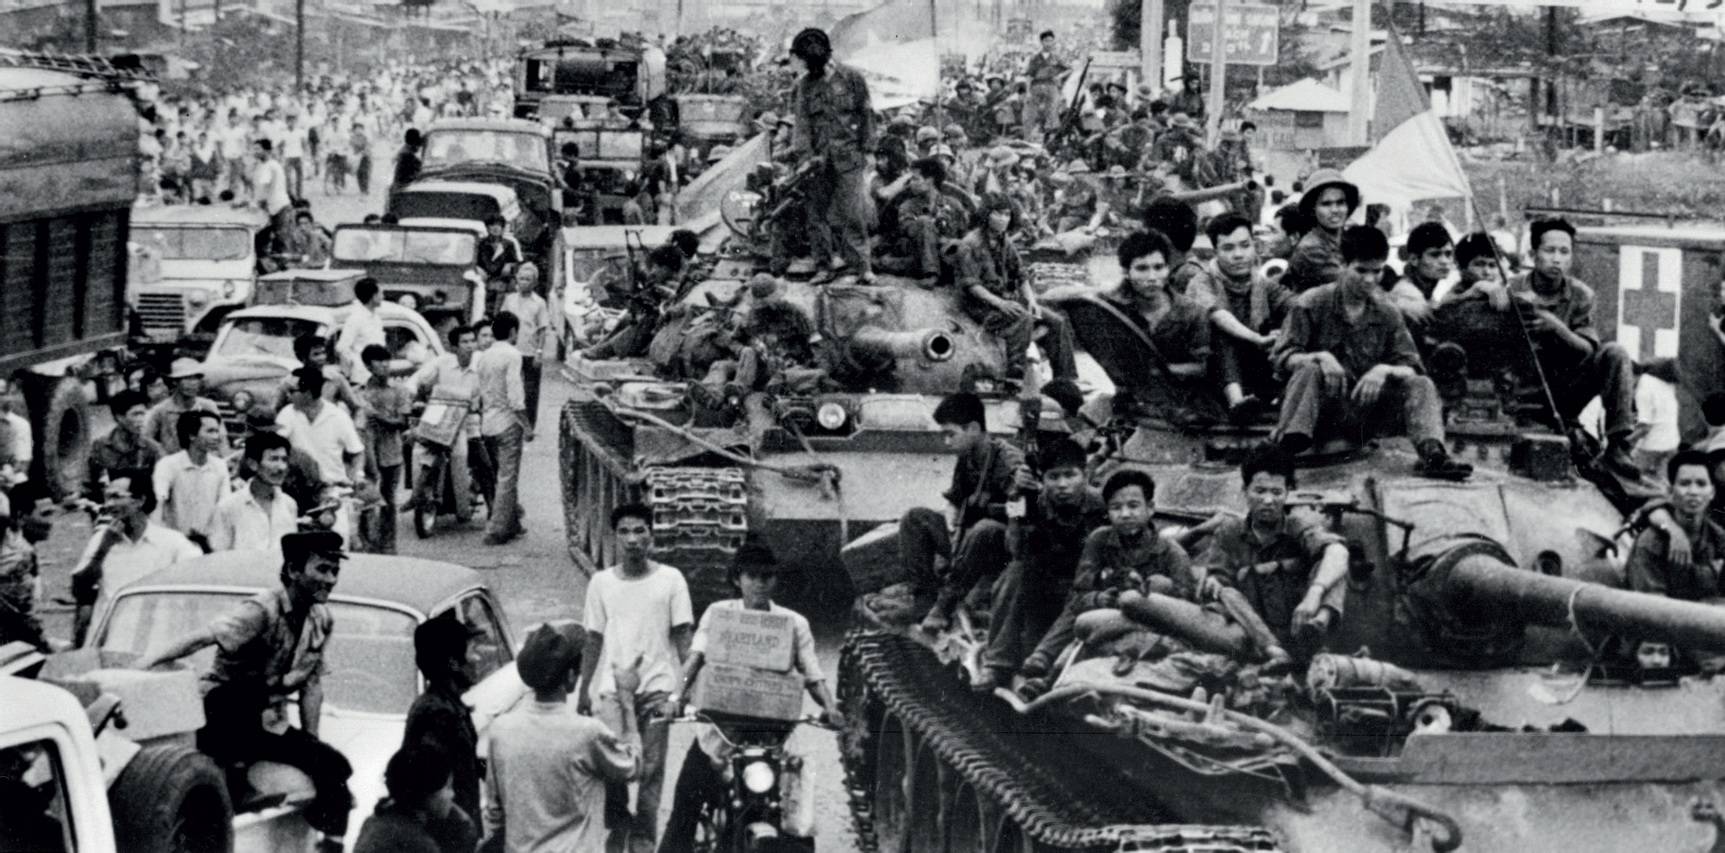 Guerra do Vietnã – Contexto, participação americana e fim da guerra